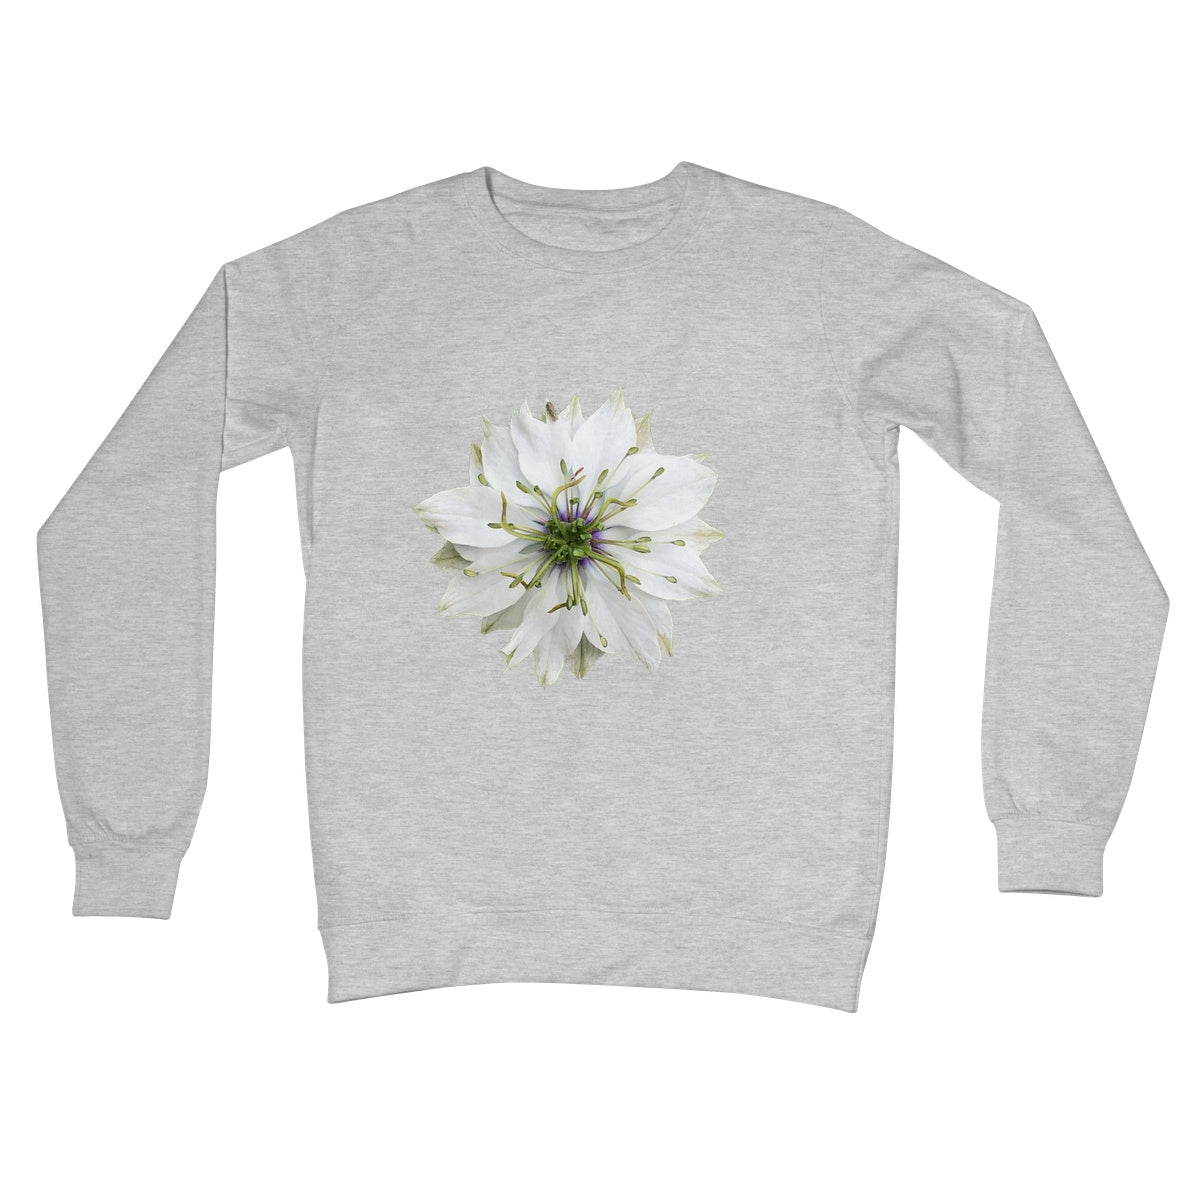 White Flower 'Nigella Love in the Mist' Crew Neck Sweatshirt